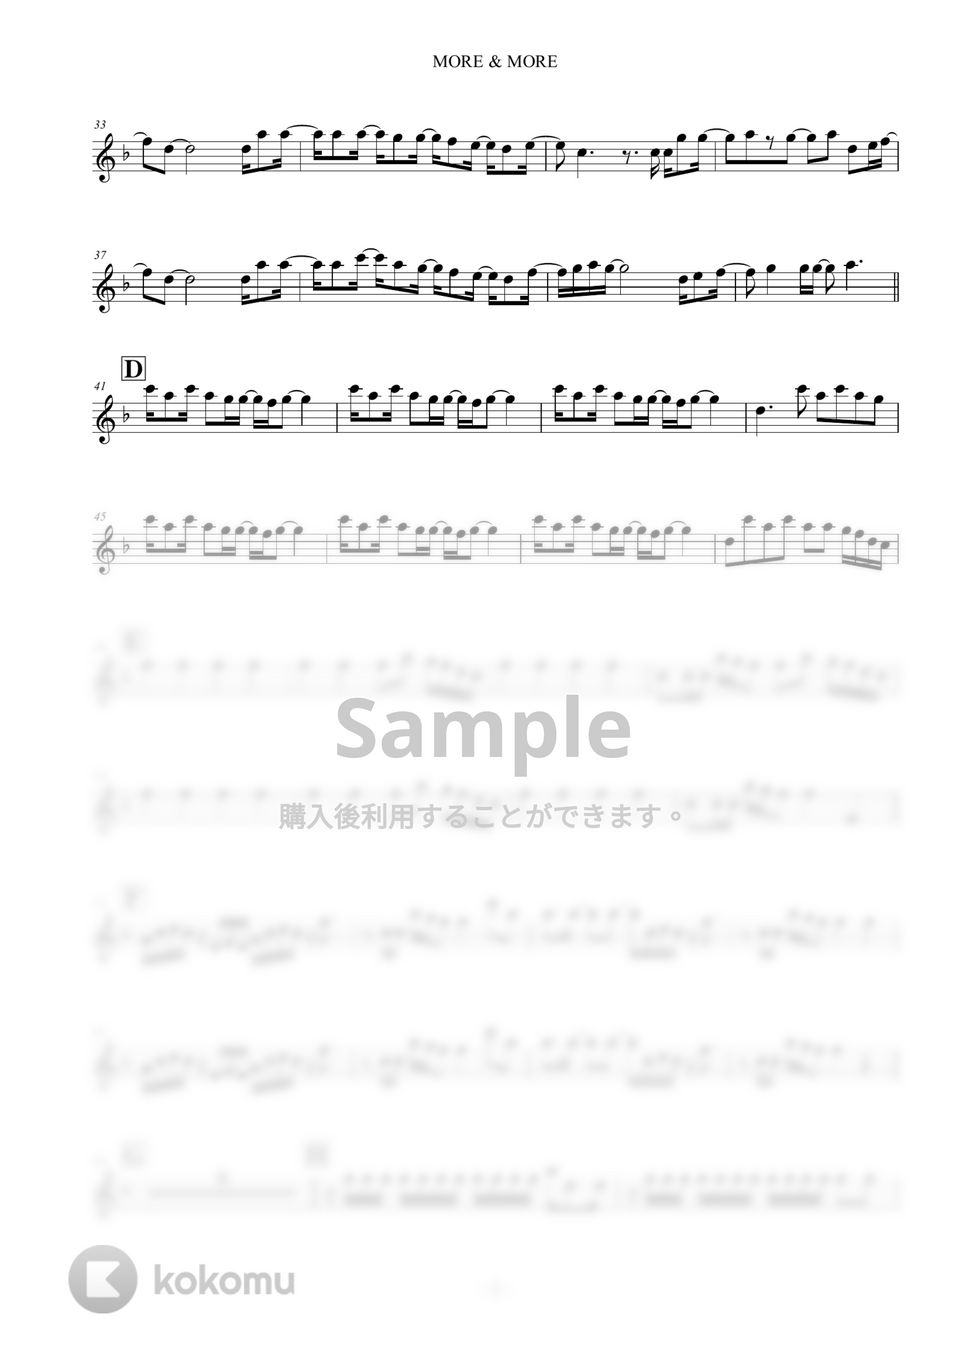 TWICE - MORE&MORE by KeisukeYamanaka(Musicpro)